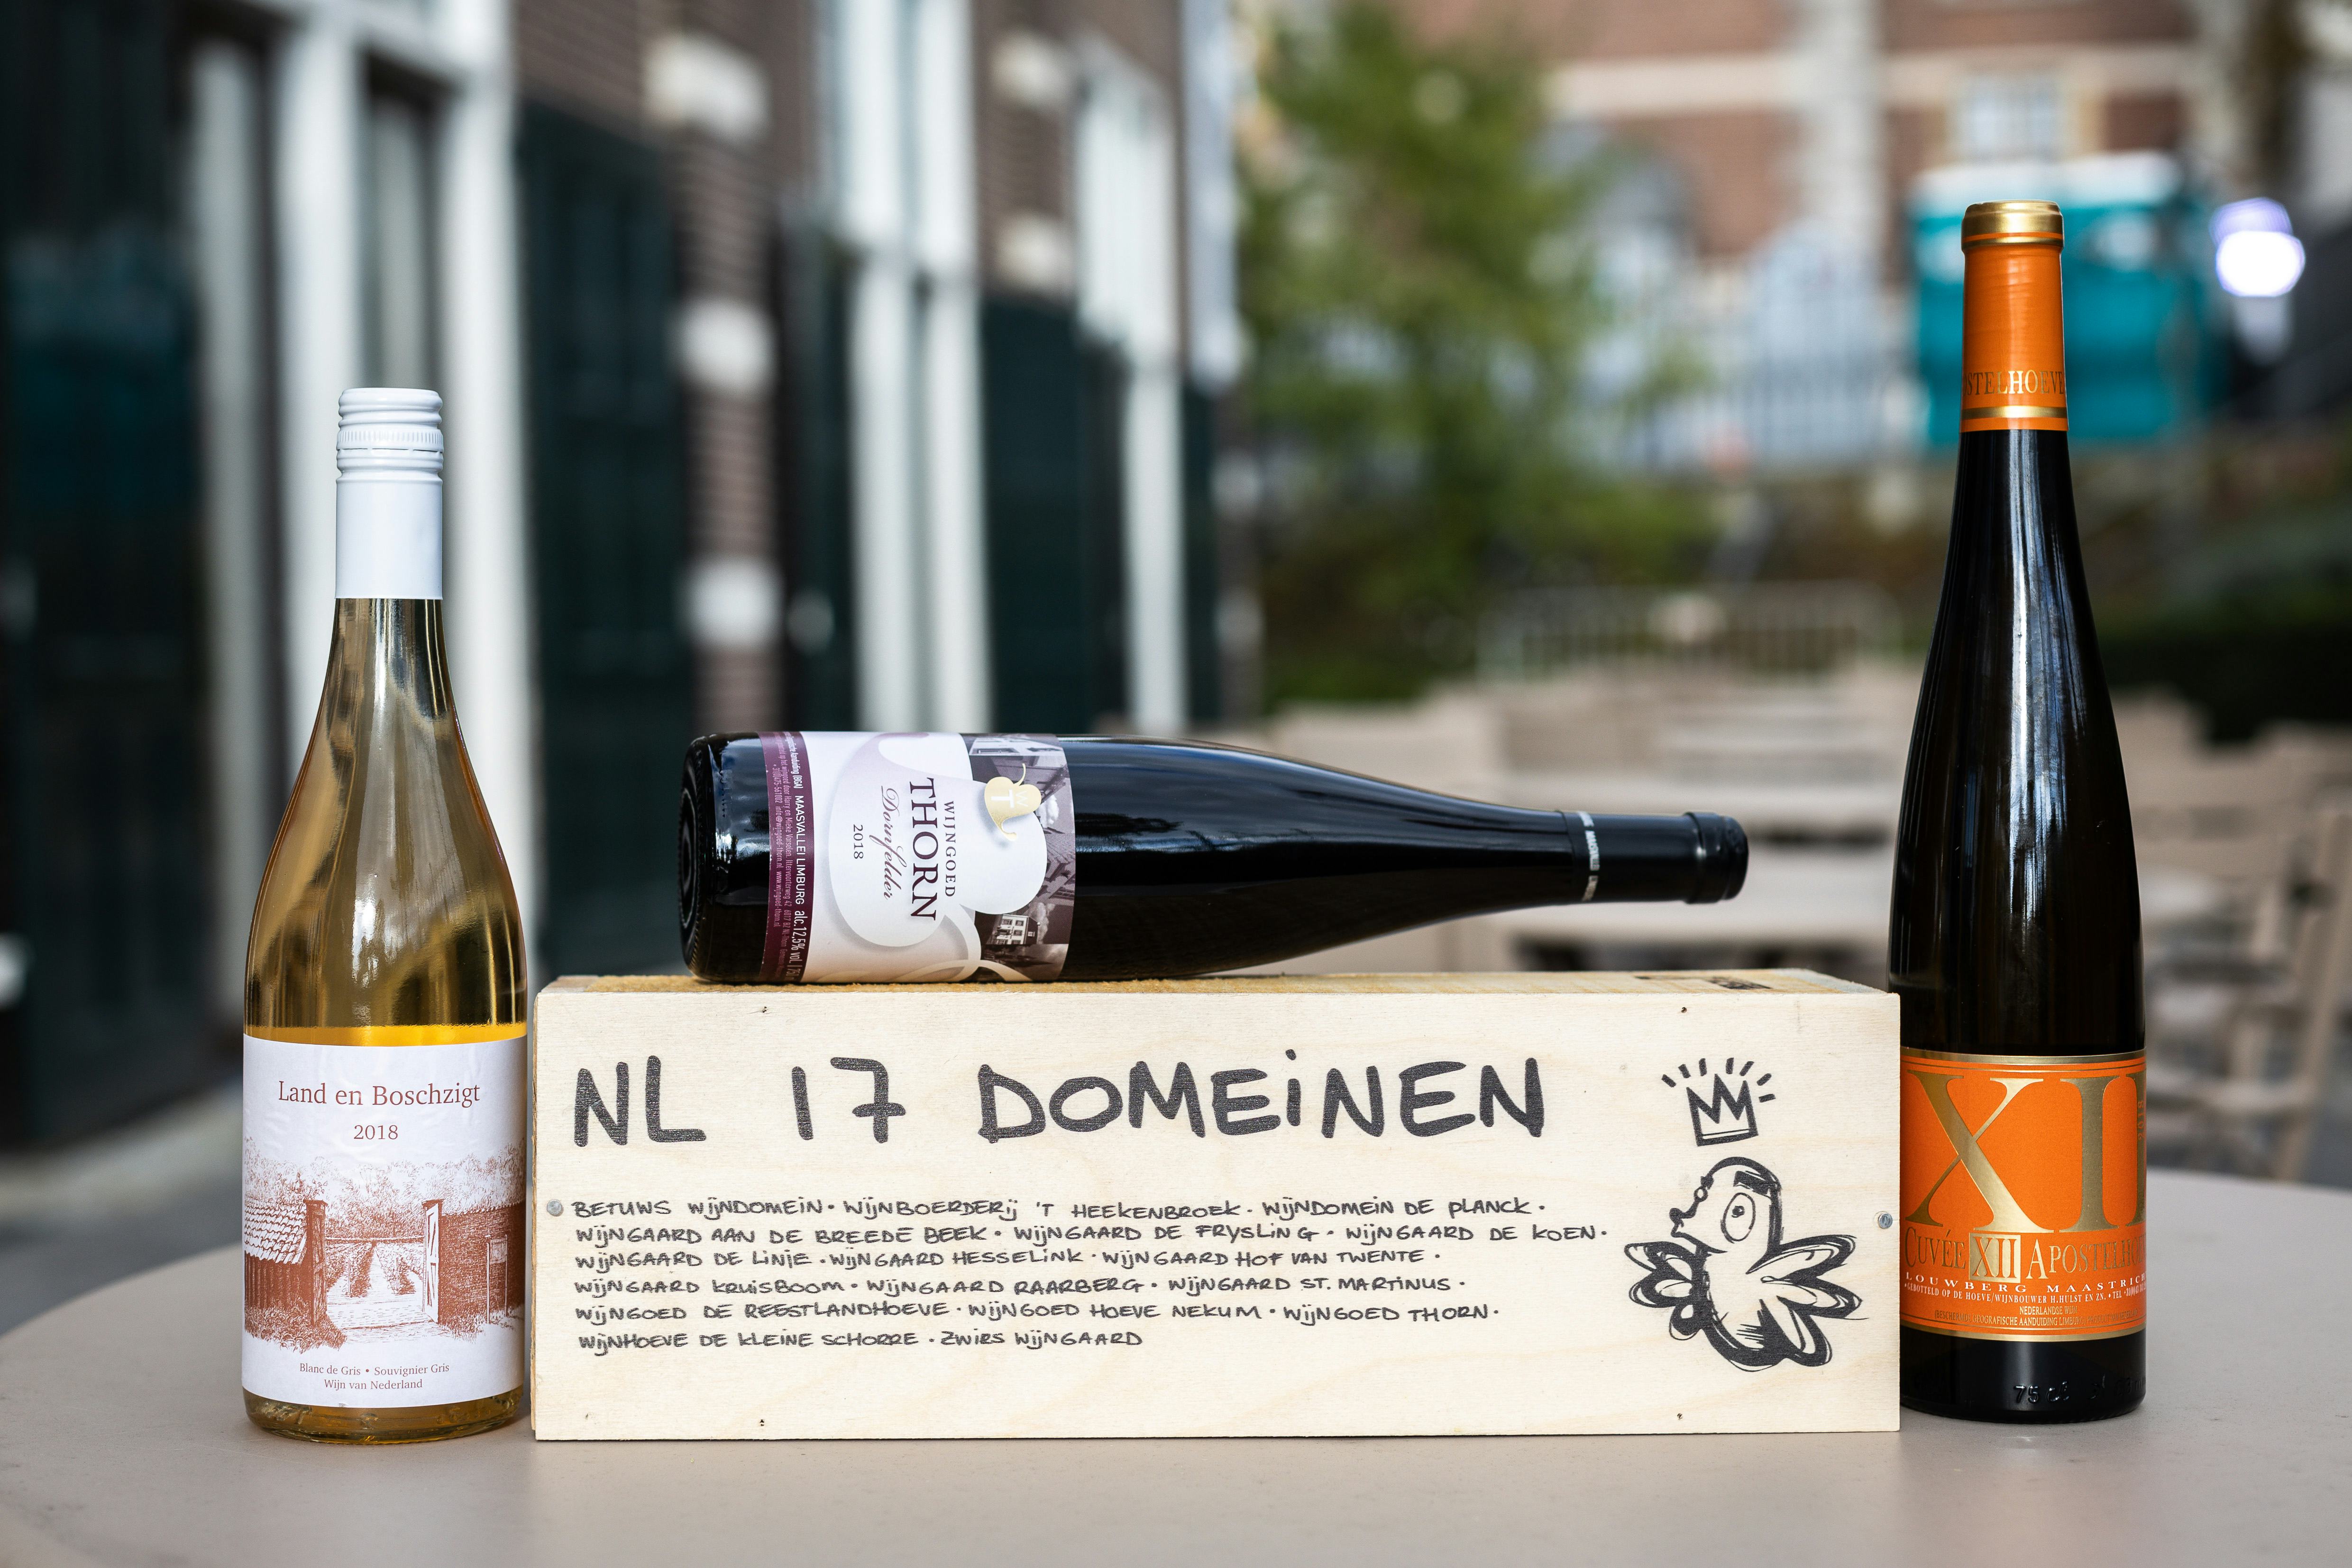 ‘NL 17 Domein’ gemaakt van witte wijn afkomstig van 17 Nederlandse wijngaarden. 